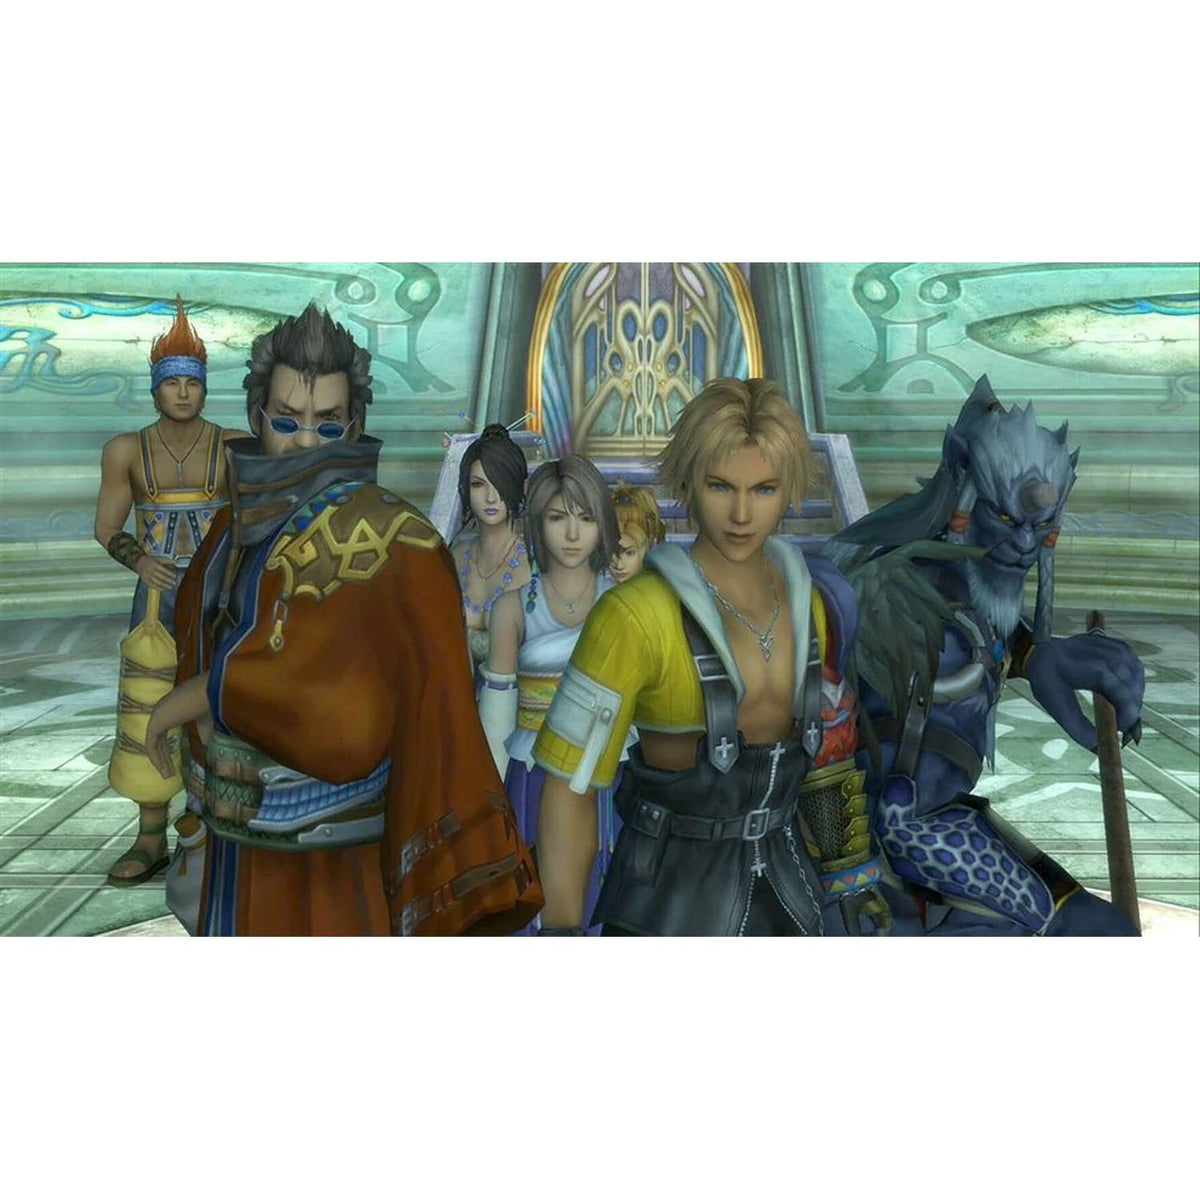 Final Fantasy X/X-2 HD Remaster Sony PlayStation 4